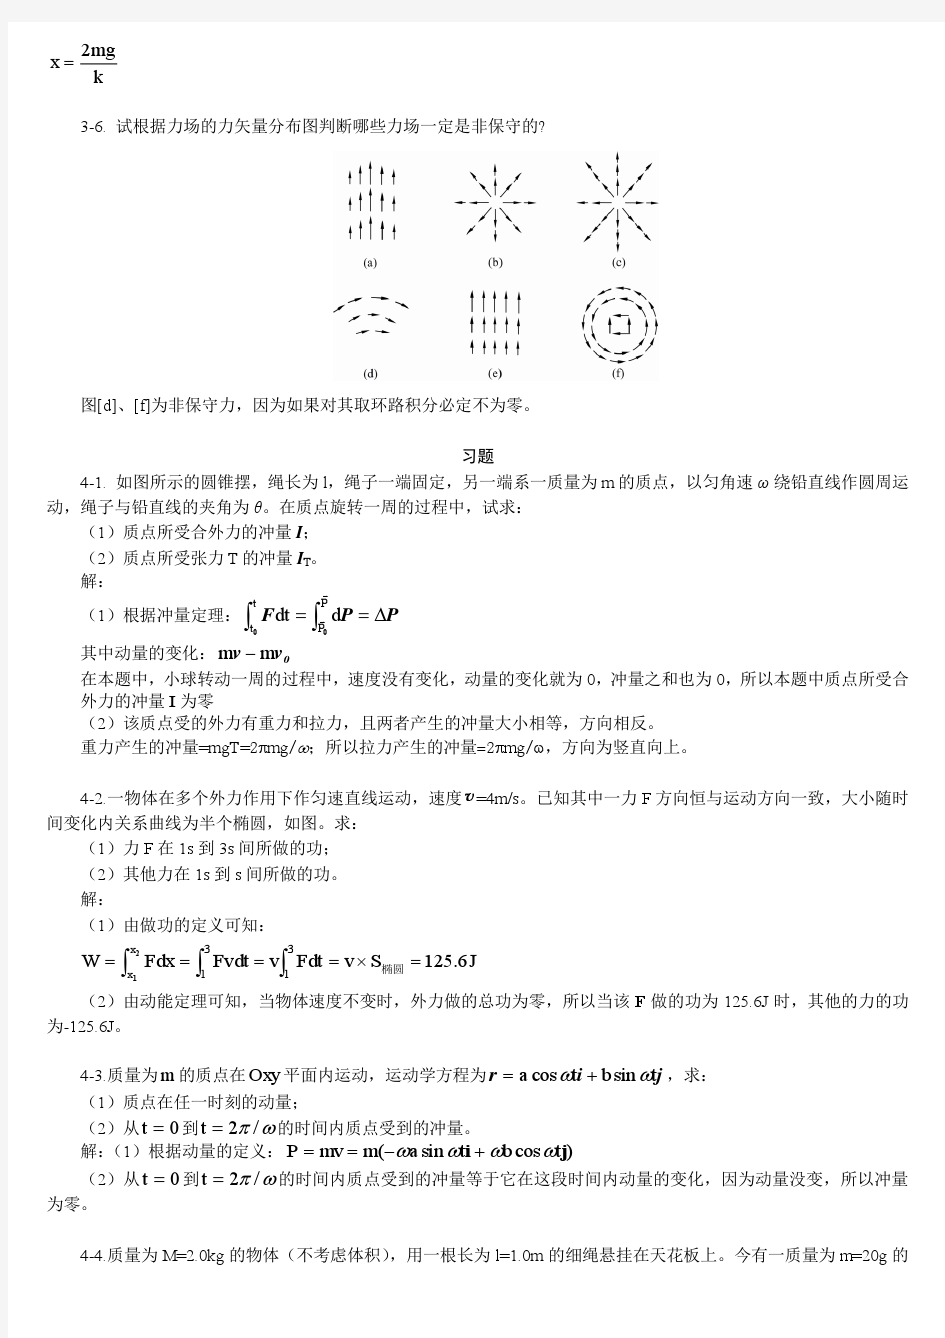 《大学物理学》答案(上海交大版)上下册 2